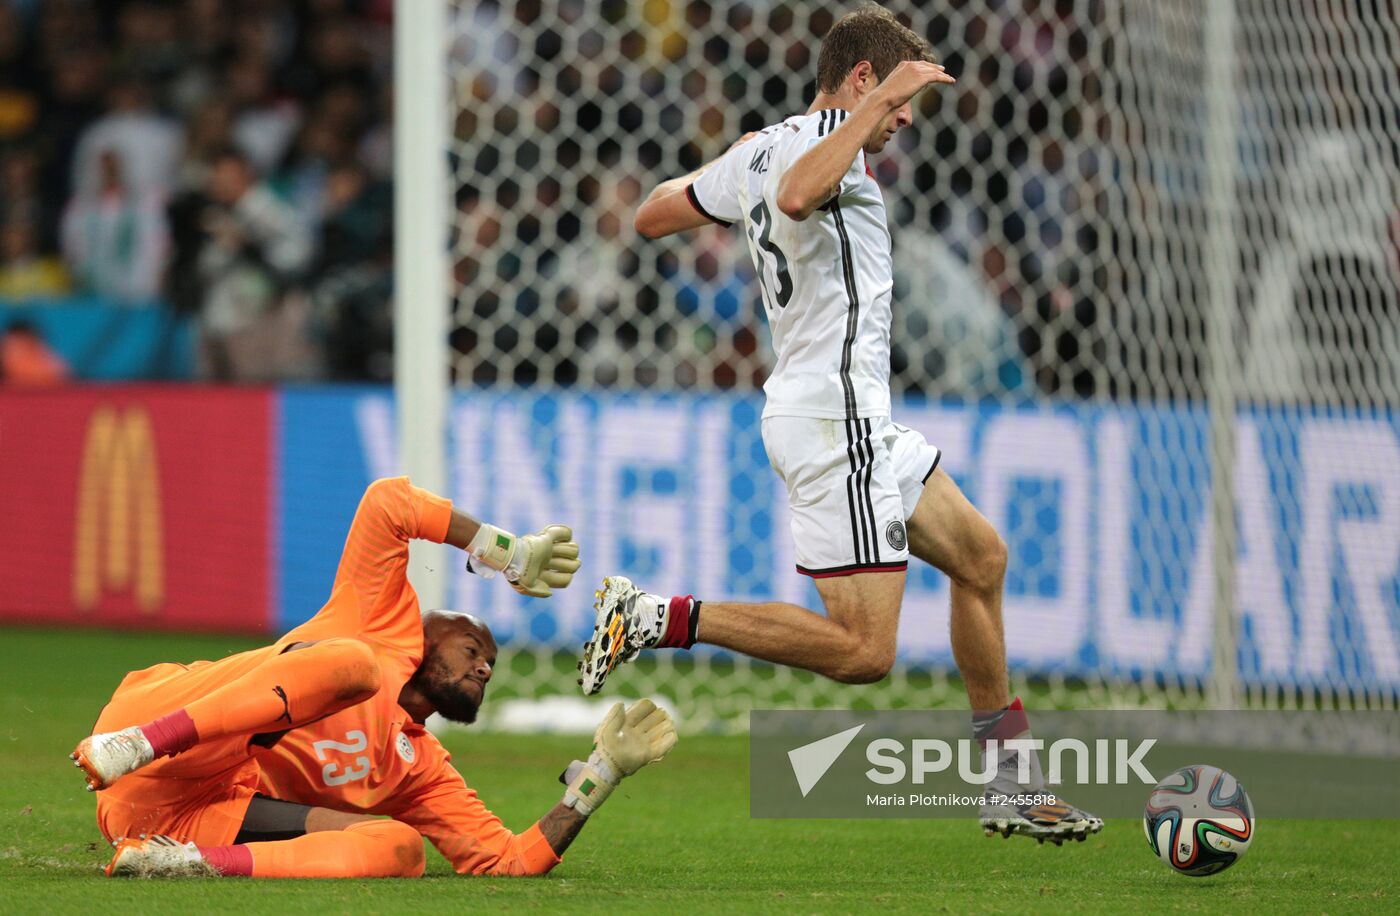 FIFA World Cup 2014. Germany vs. Algeria